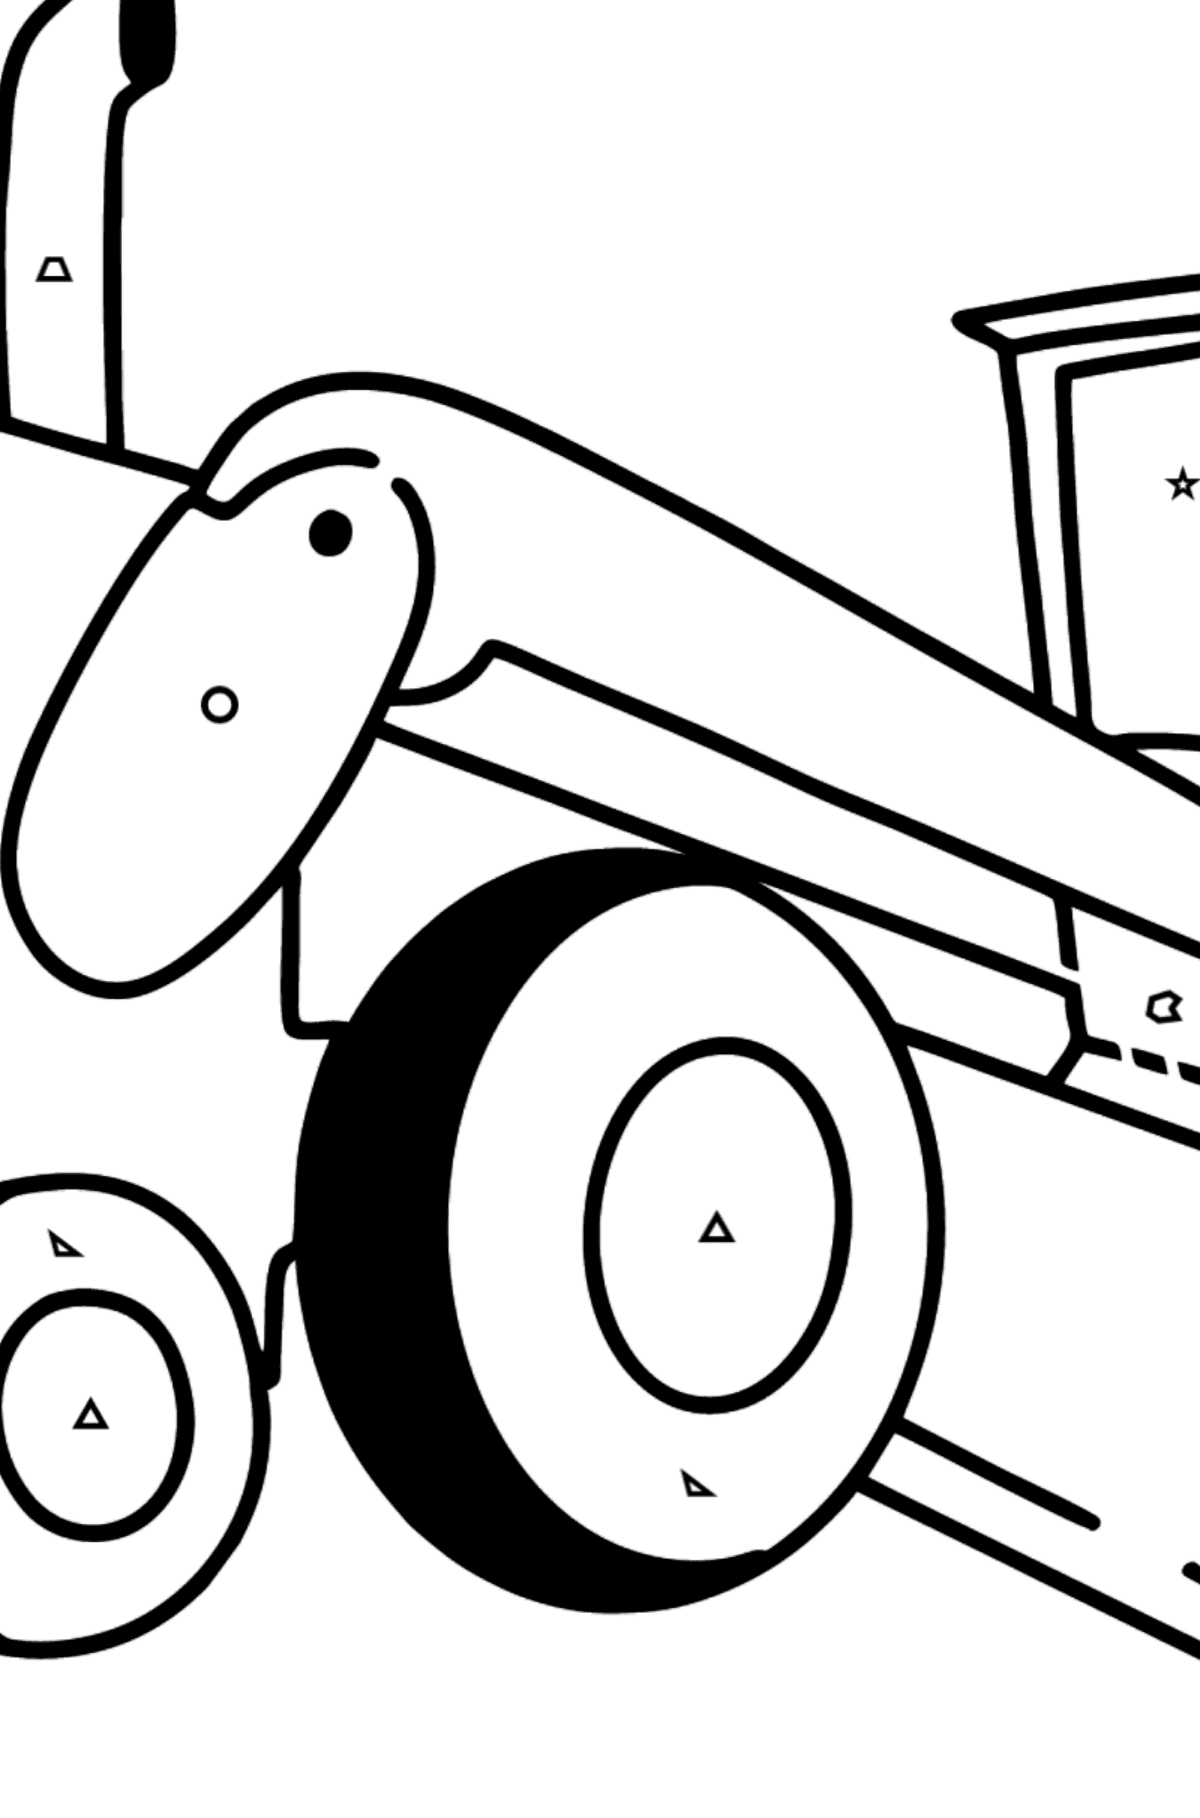 Dibujo de Tractor nivelador para colorear - Colorear por Formas Geométricas para Niños